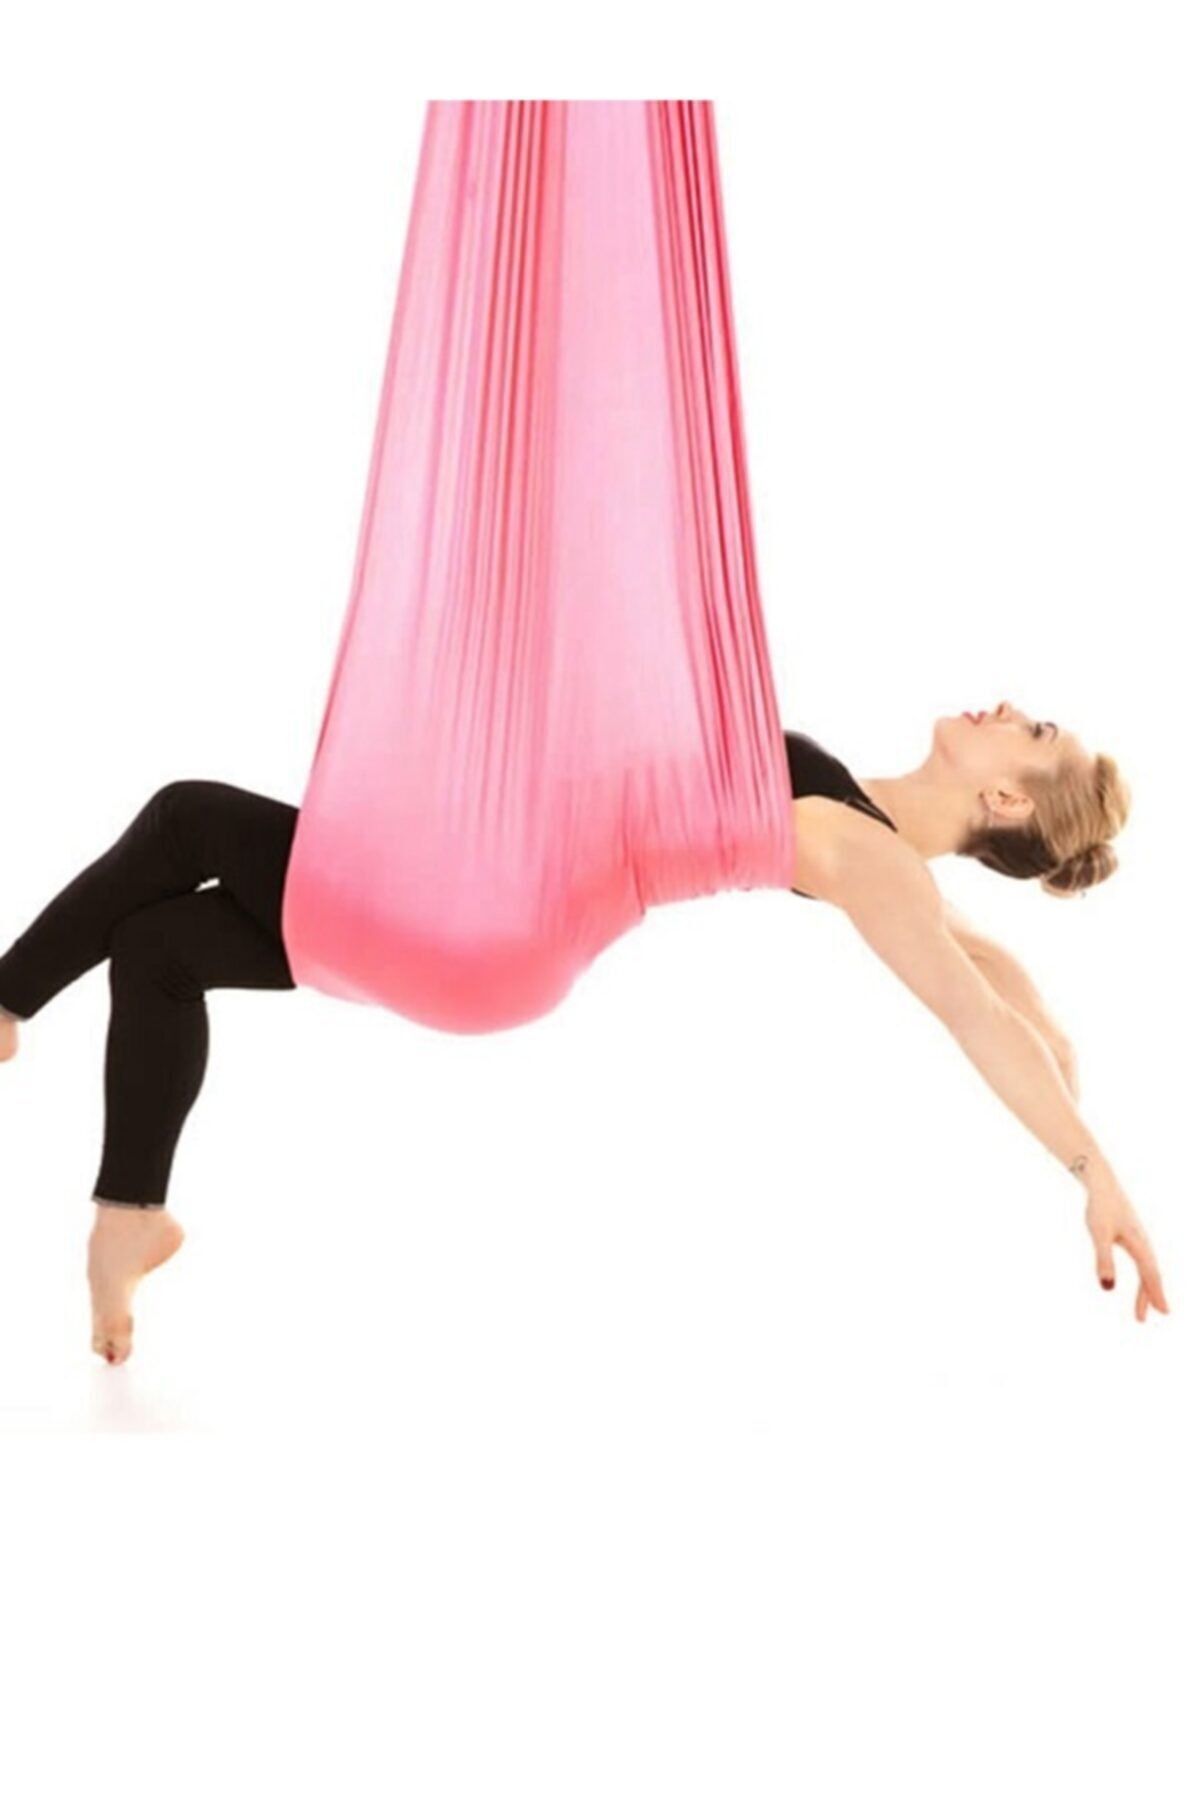 Bundera Yoga Fly Hamağı Pembe Tavana Askılı Yer Çekimsiz Fitness Pilates Hava Akrobasi Egzersiz Denge Aleti